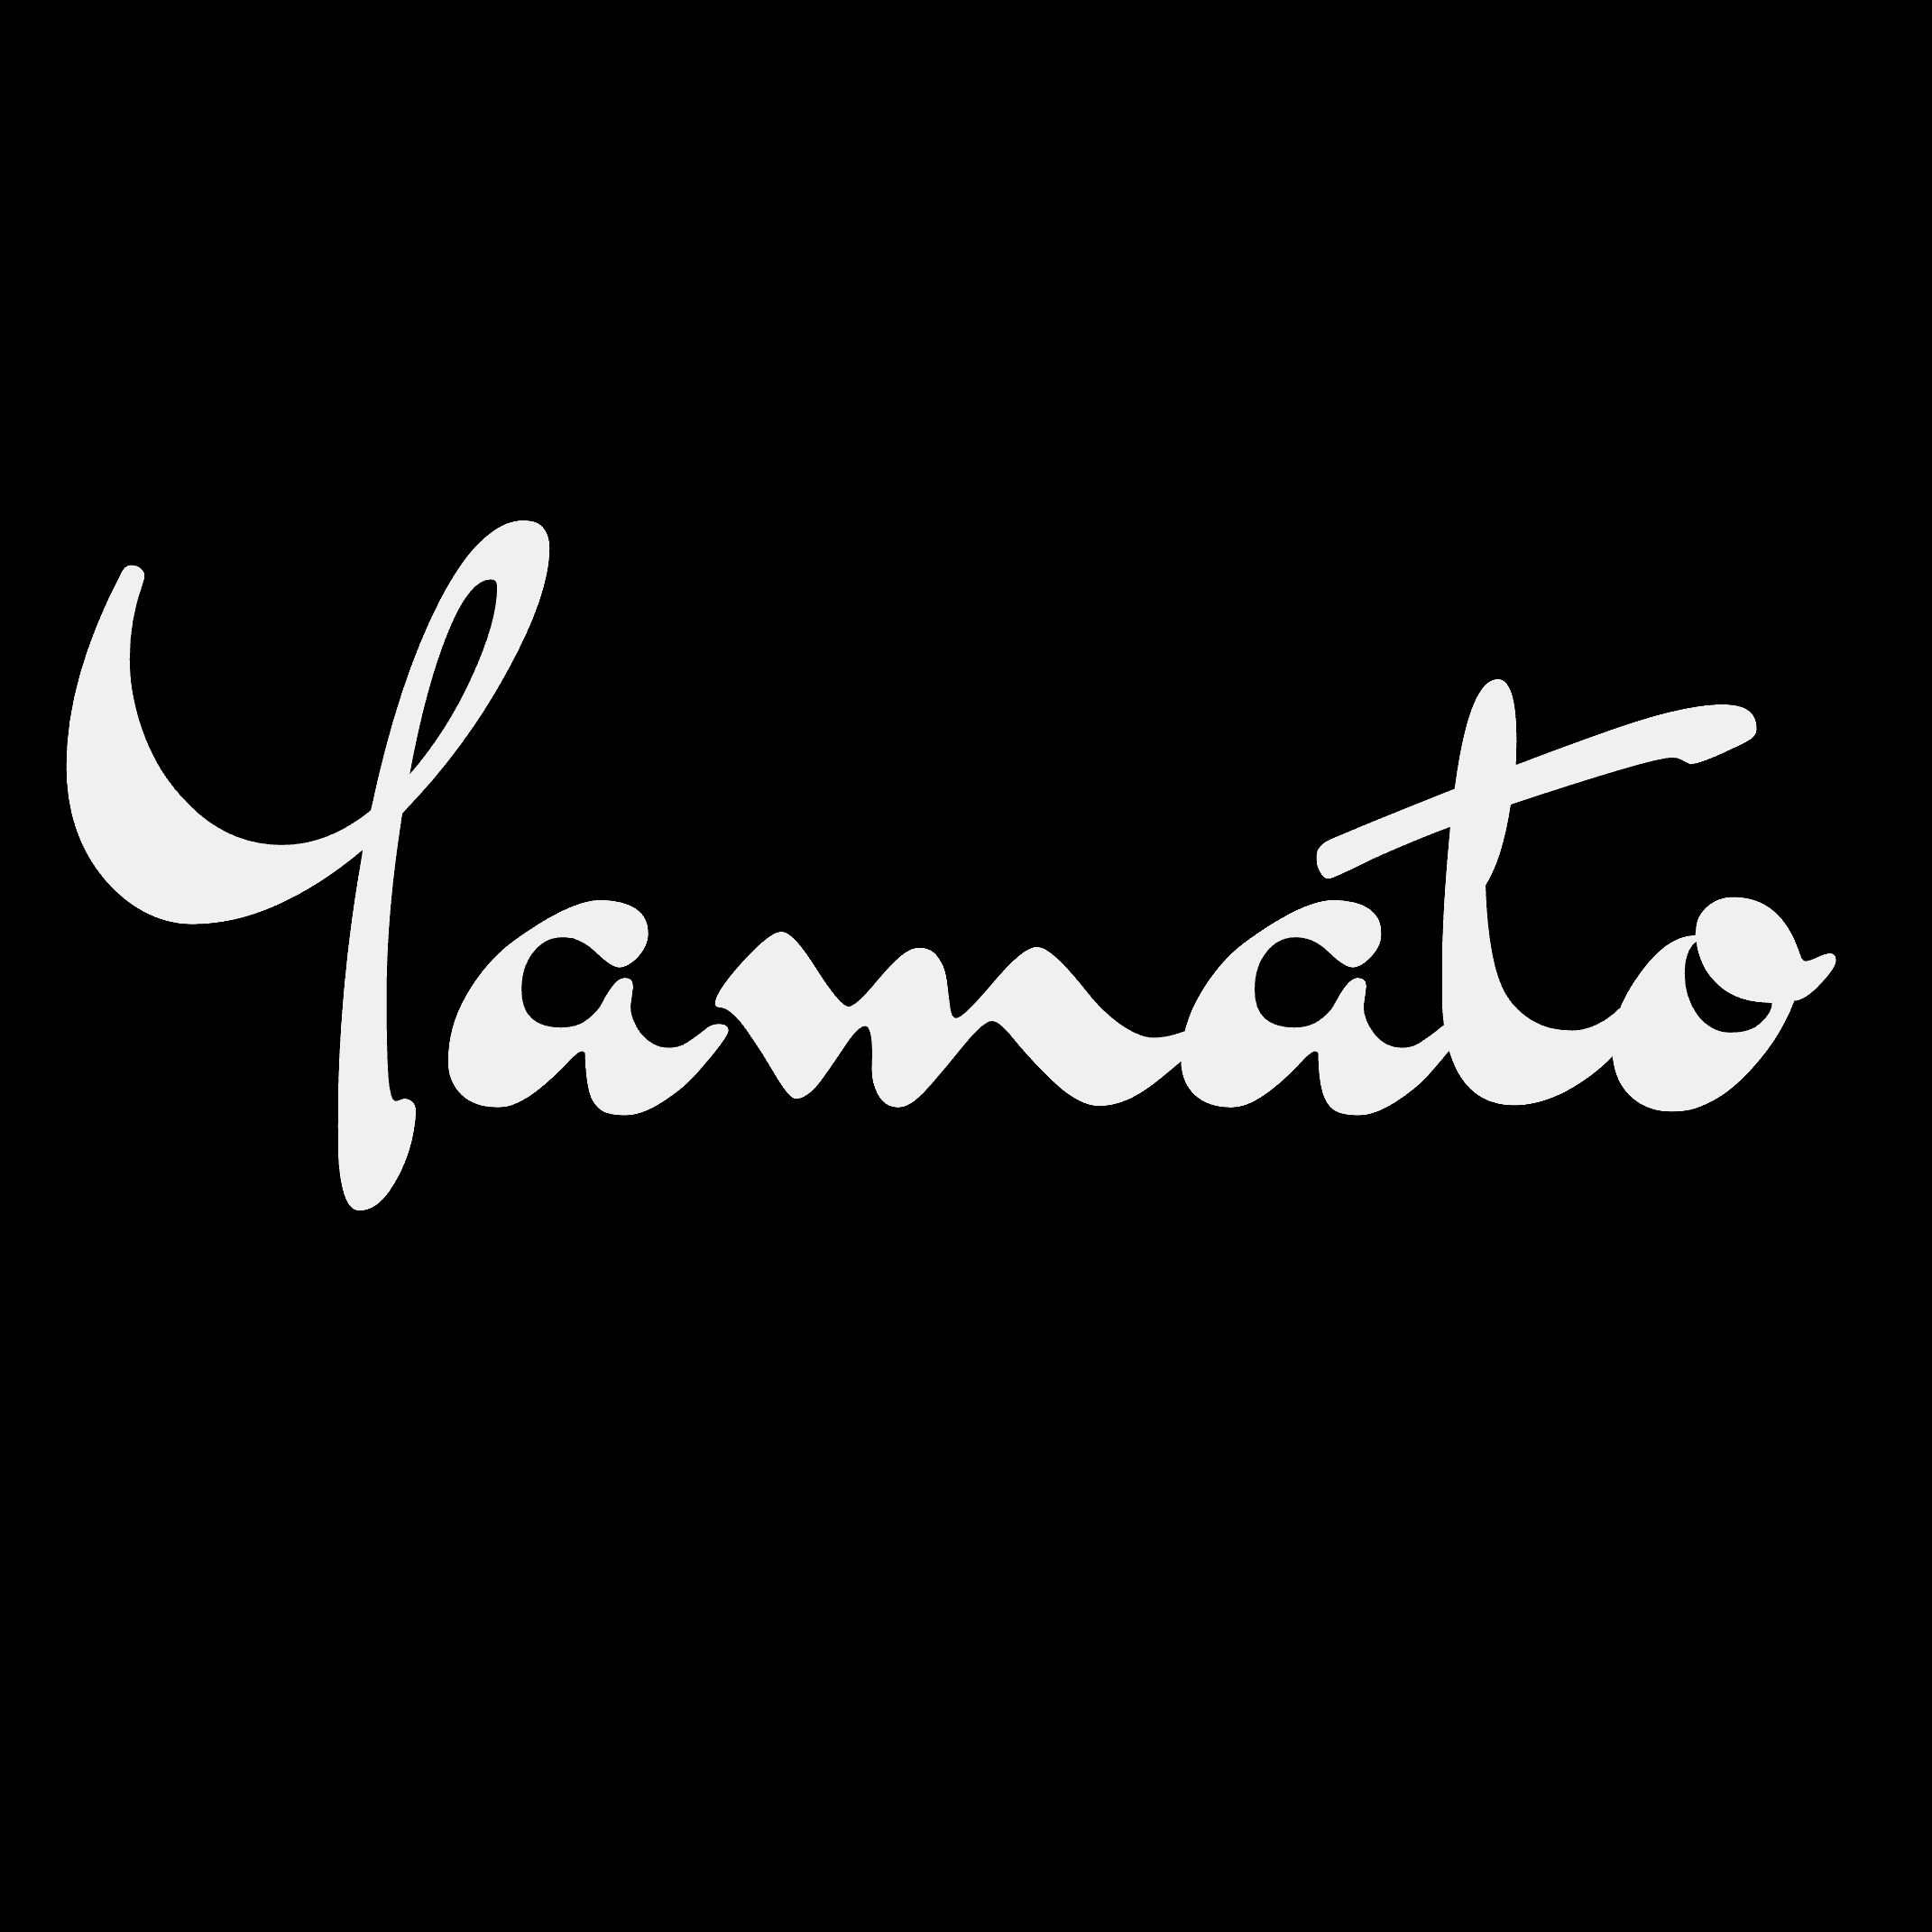 yamato_studio バナー